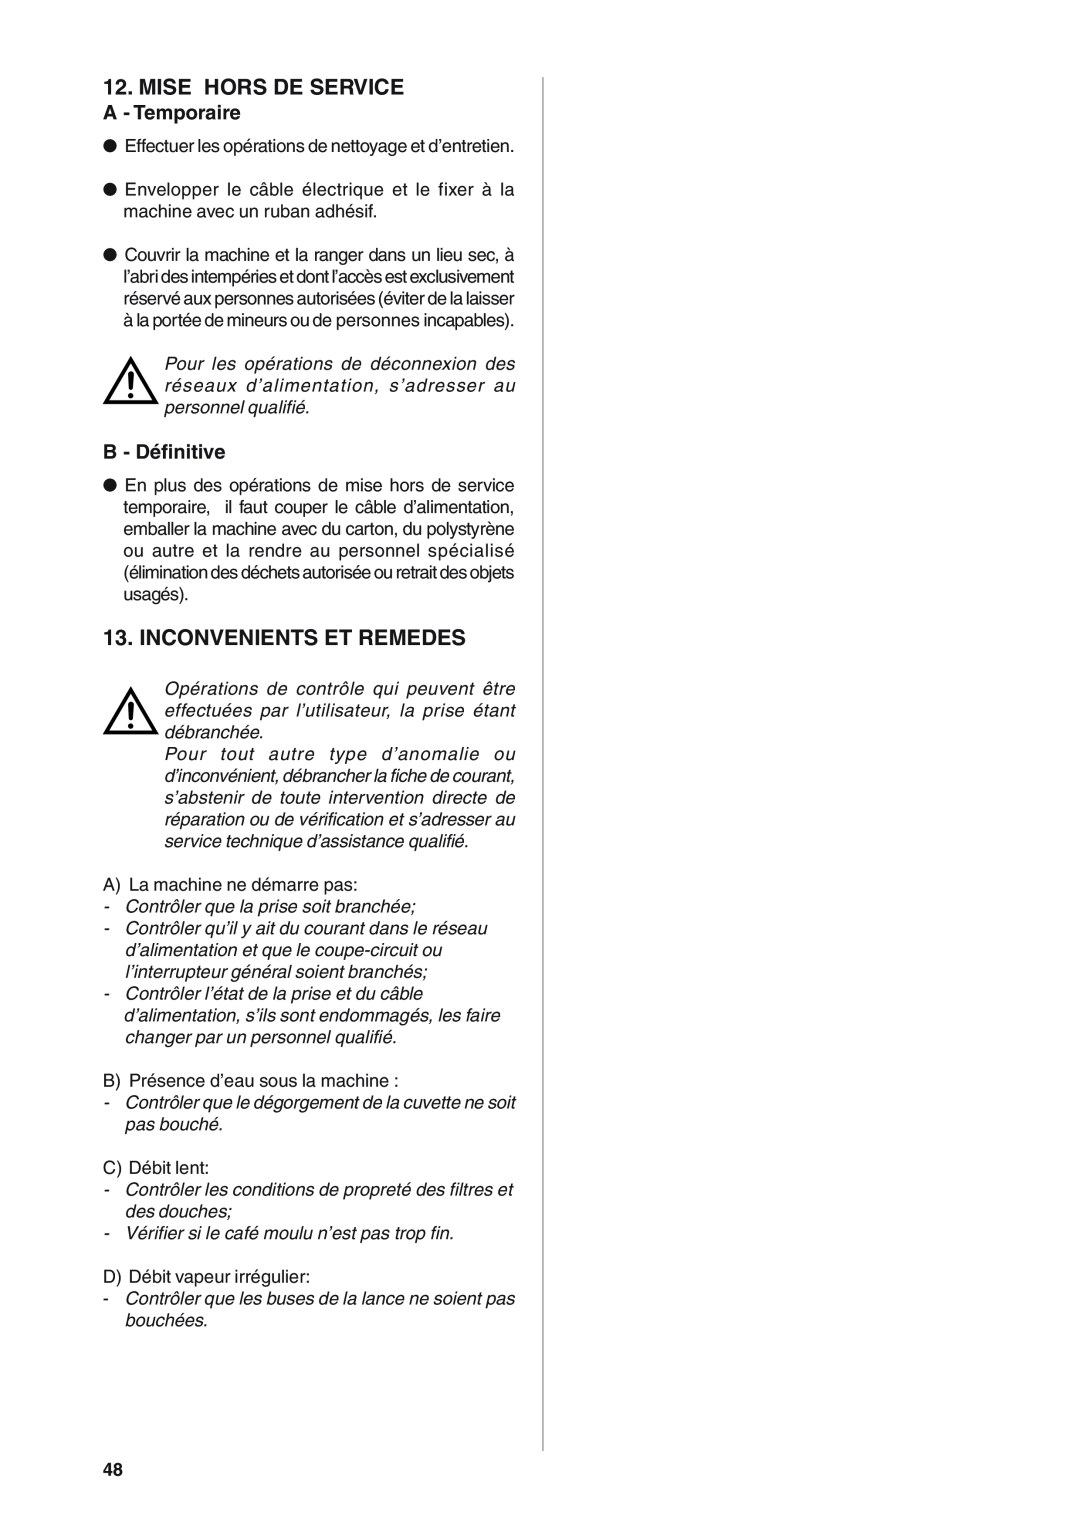 Rancilio S20 manual Mise Hors De Service, Inconvenients Et Remedes, A - Temporaire, B - Définitive 